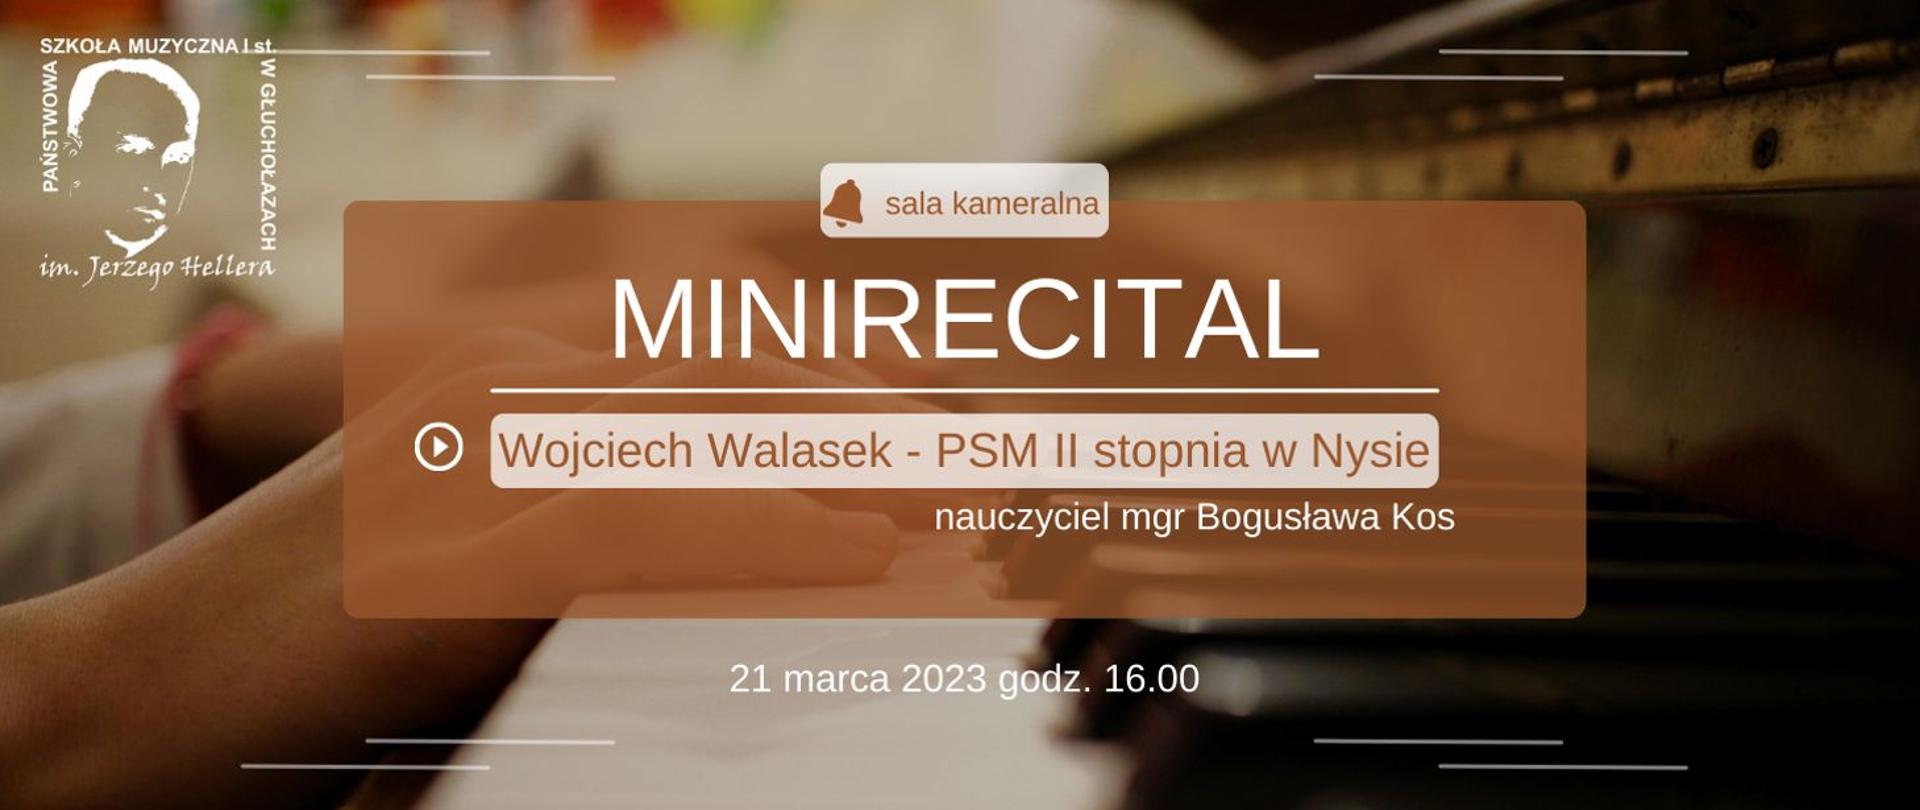 Grafika - zapowiedź minirecitalu w wykonaniu Wojciecha Walaska - PSM II stopnia w Nysie nauczyciel mgr Bogusława Kos 21 marca 2023 godz. 16.00.